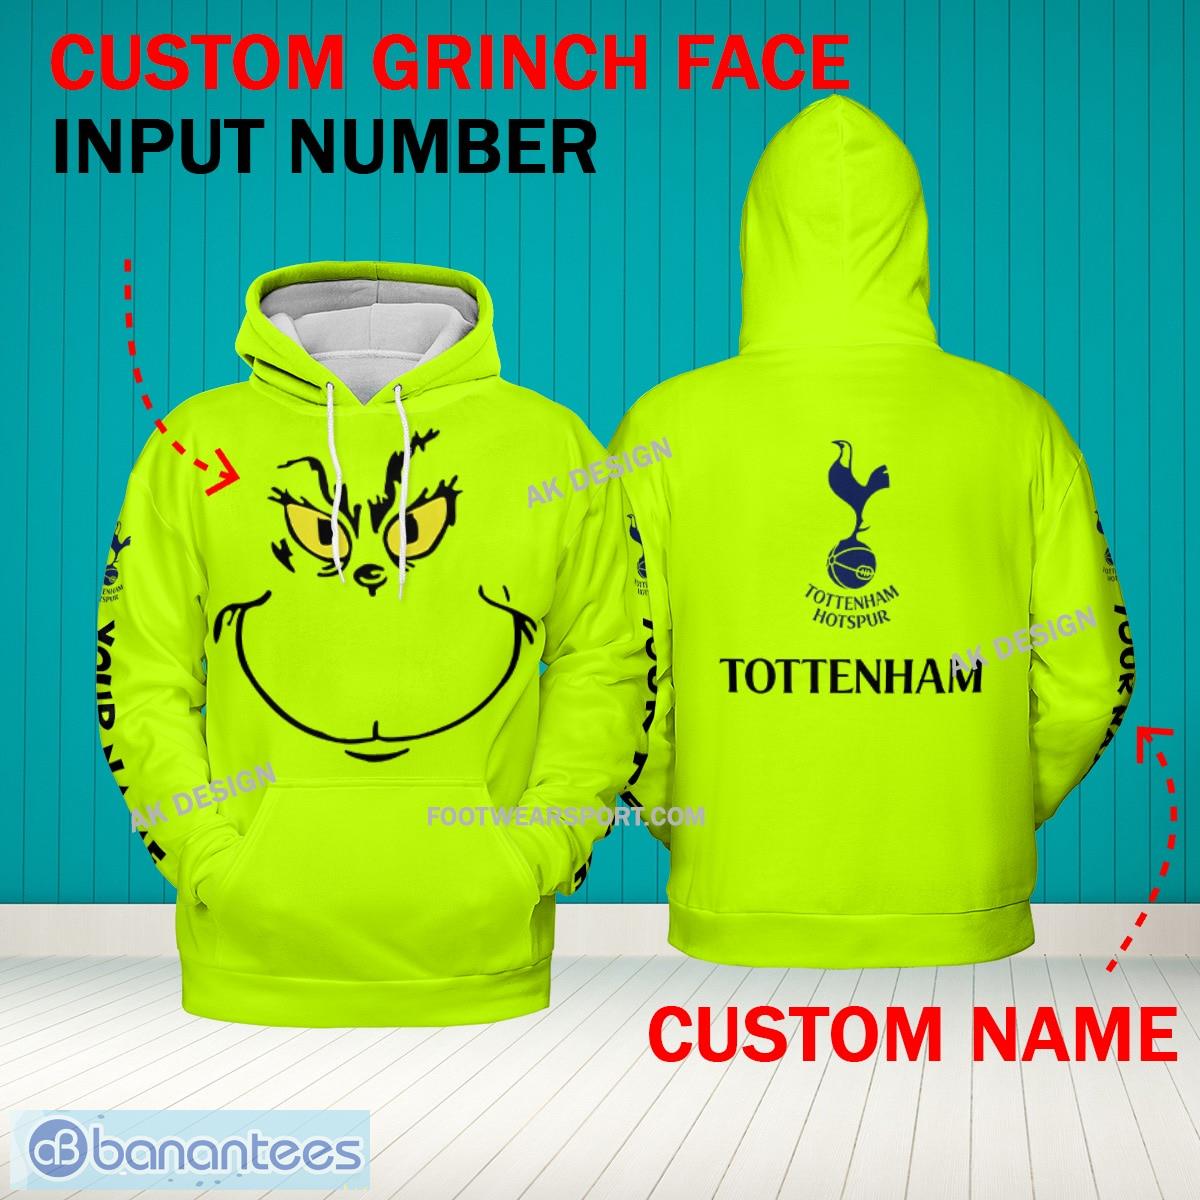 Grinch Face Tottenham Hotspur 3D Hoodie, Zip Hoodie, Sweater Green AOP Custom Number And Name - Grinch Face EPL Tottenham Hotspur 3D Hoodie